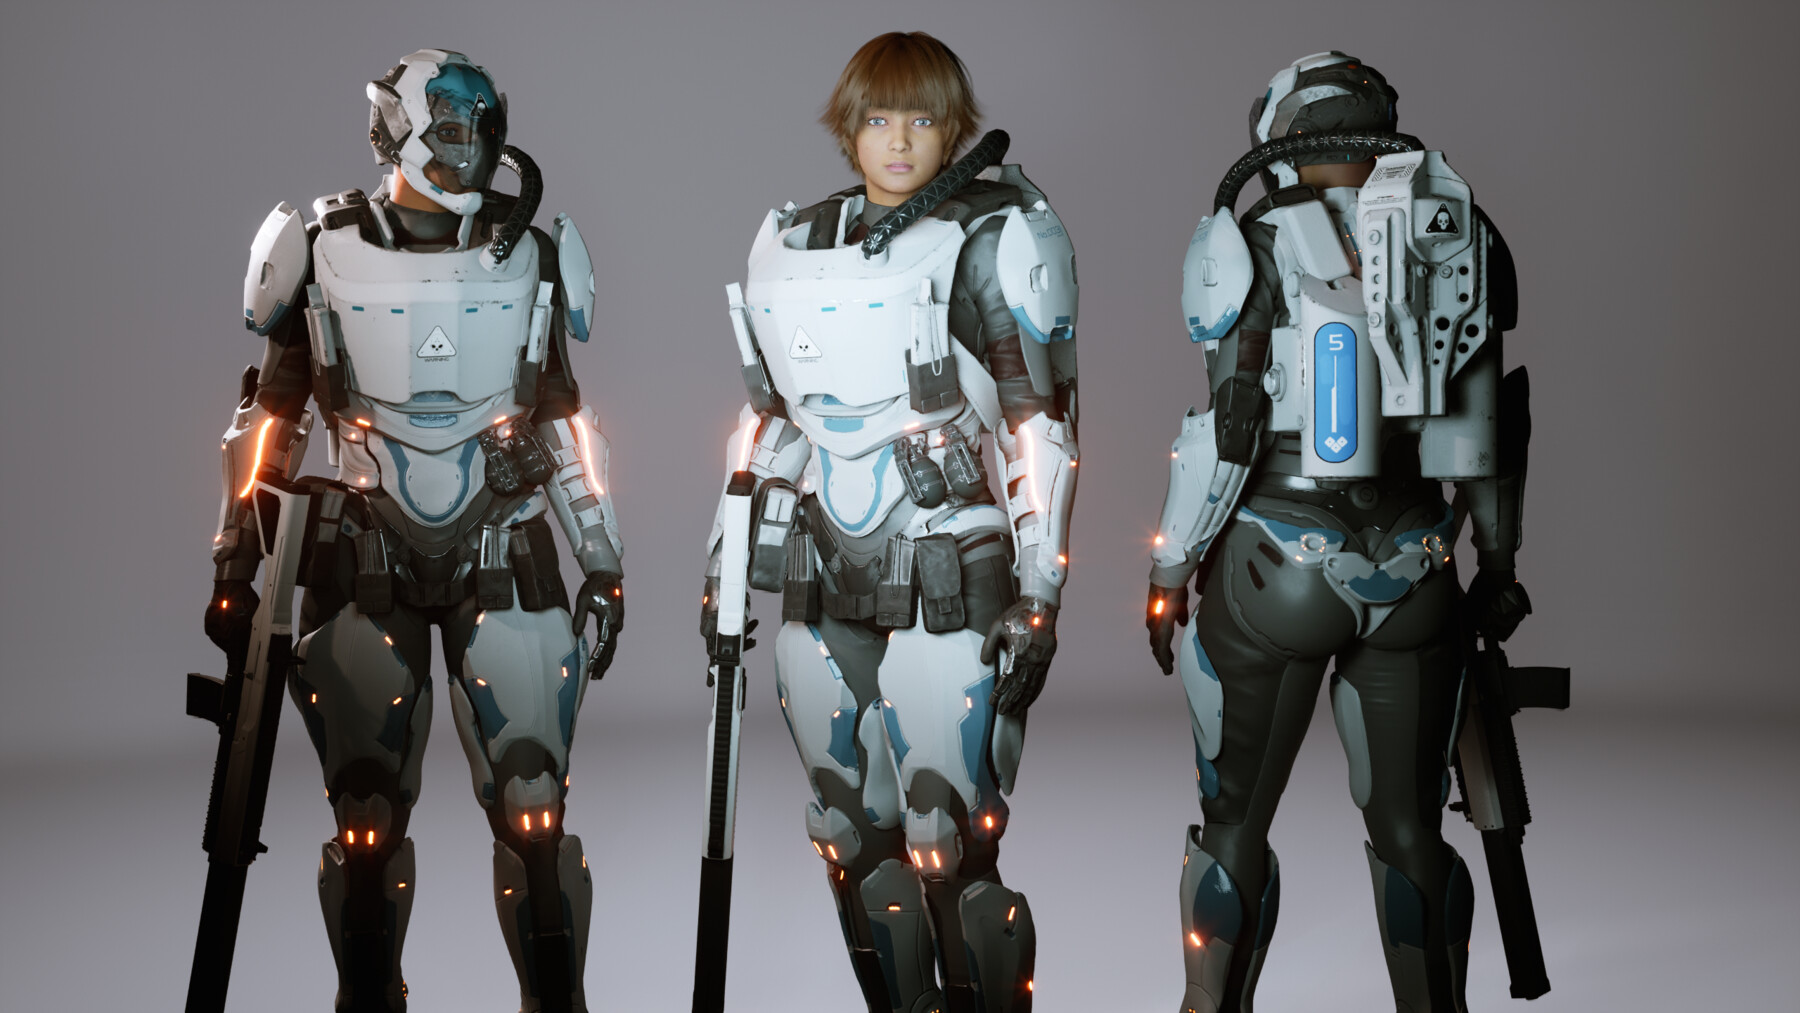 280 High Tech Armor ideas  armor, sci fi characters, armor concept